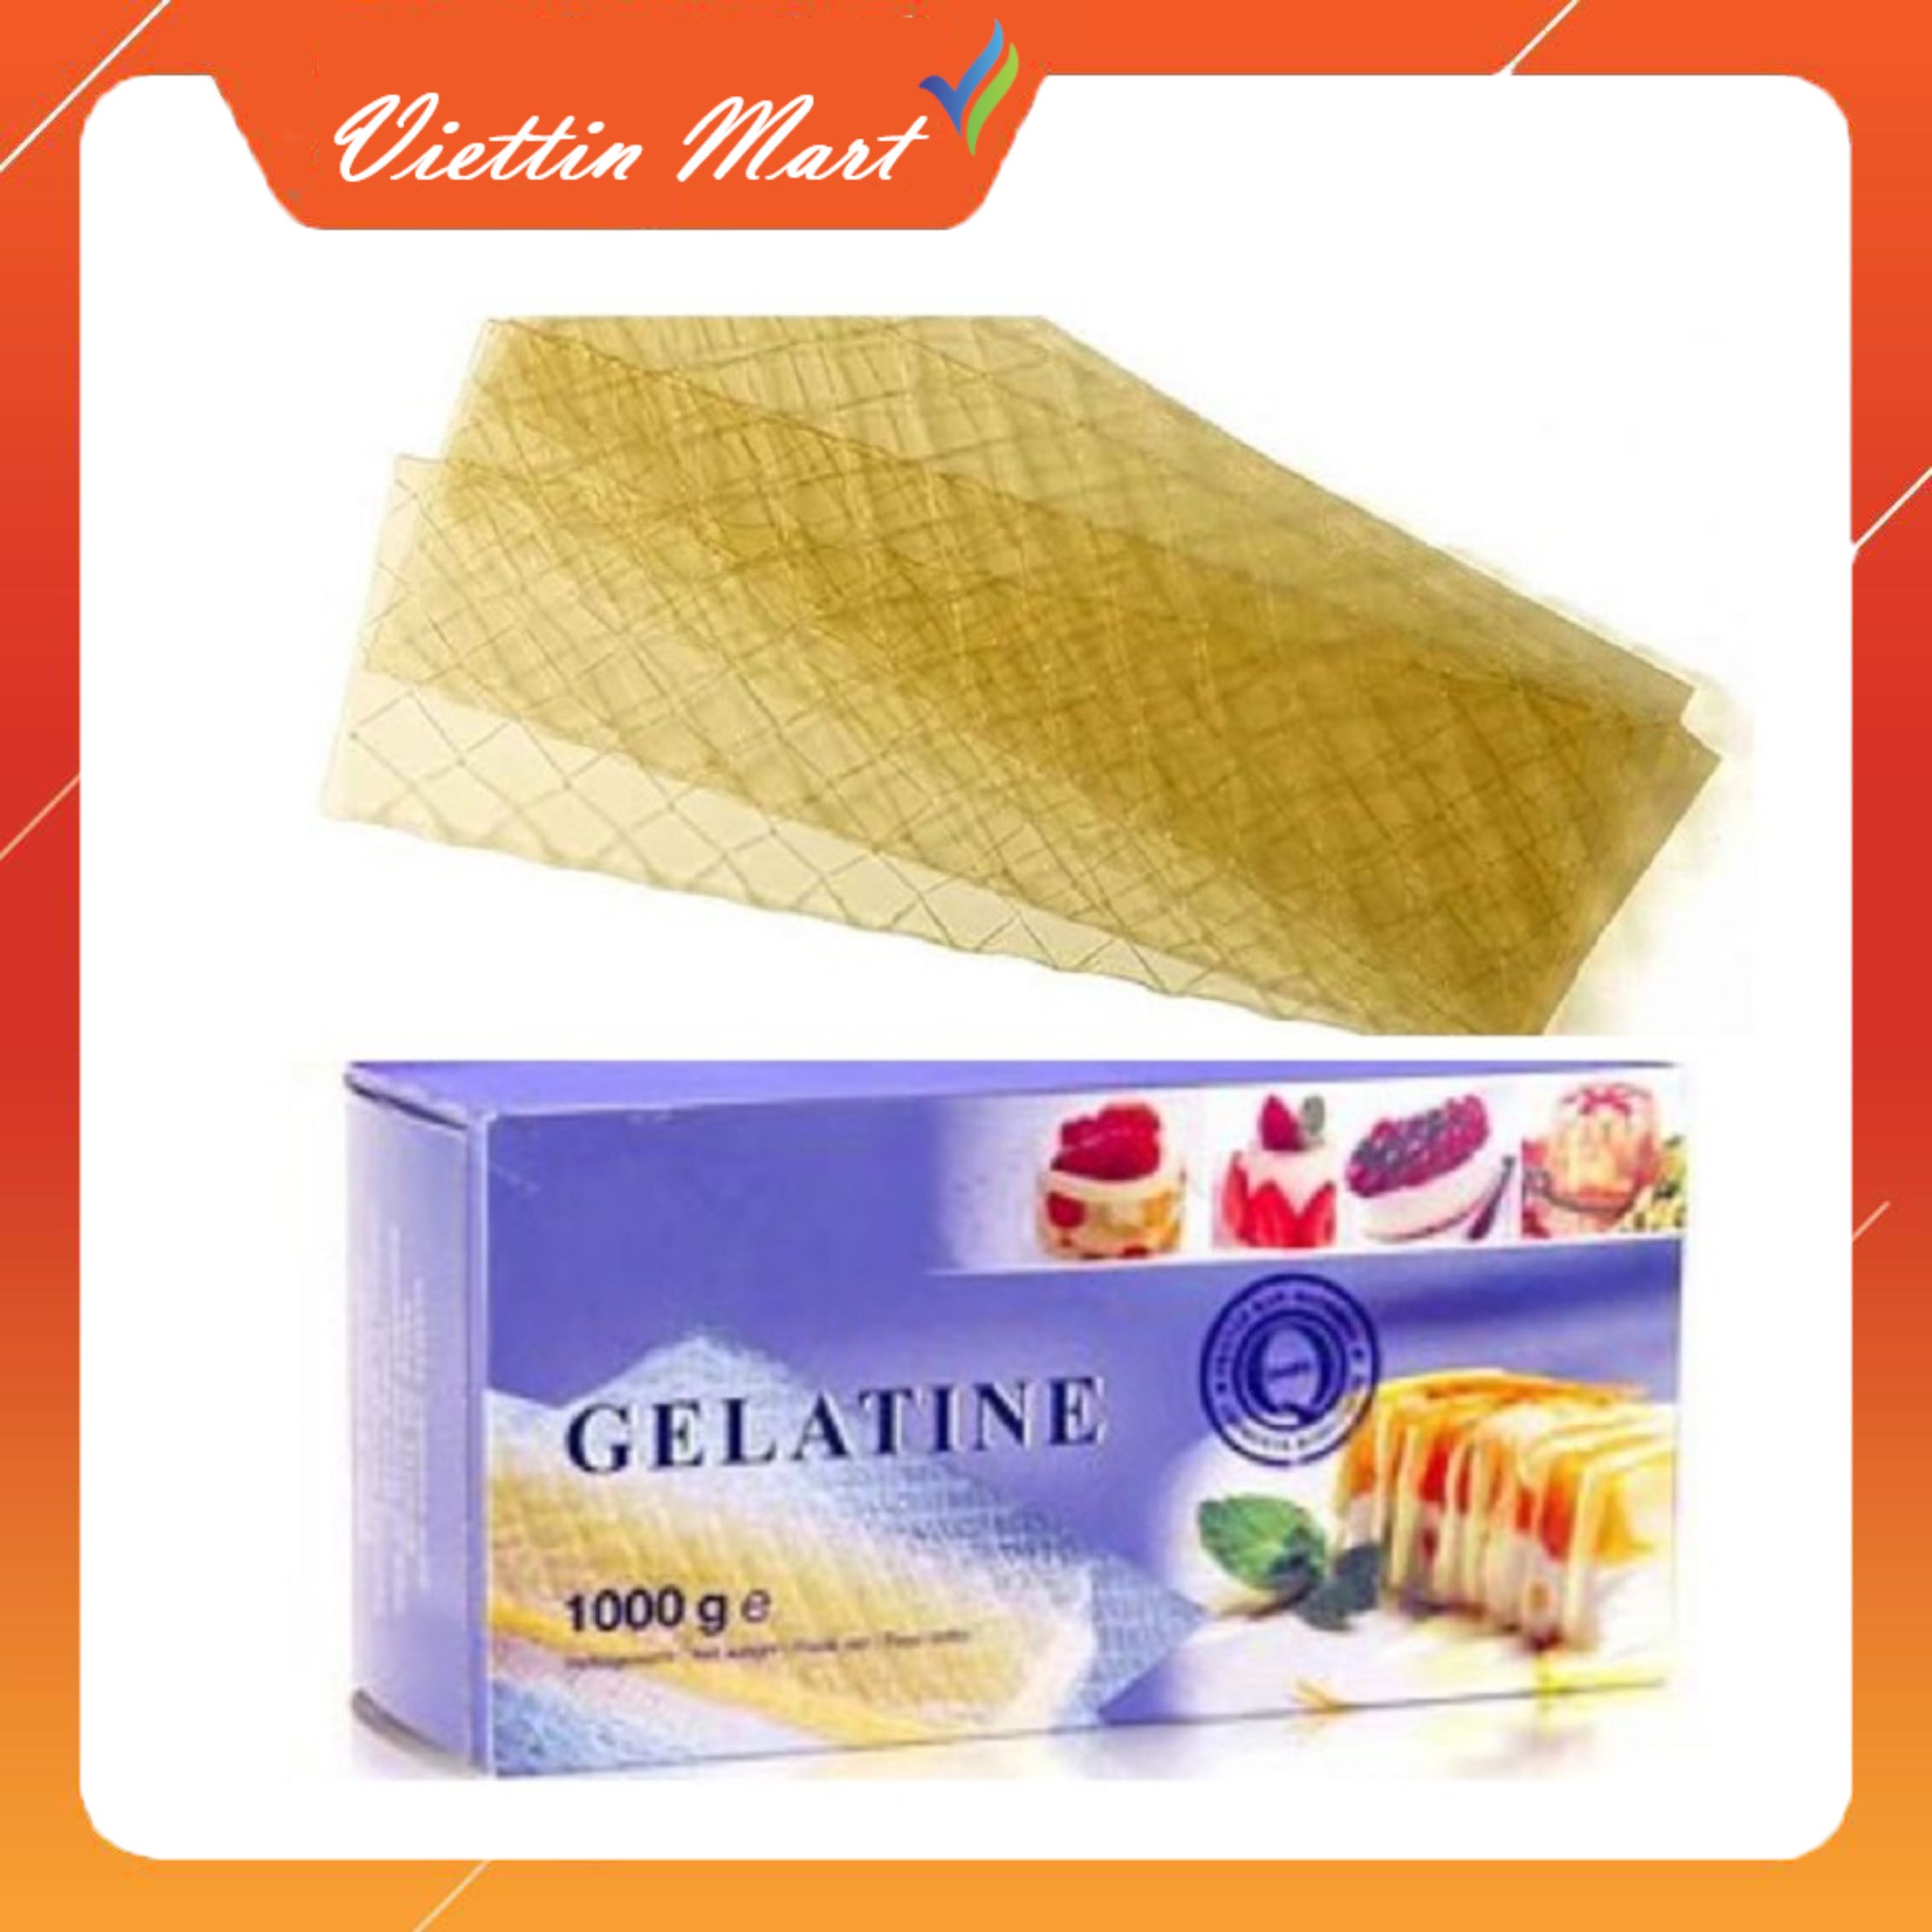 10 lá gelatine làm bánh, kẹo -Viettin Mart